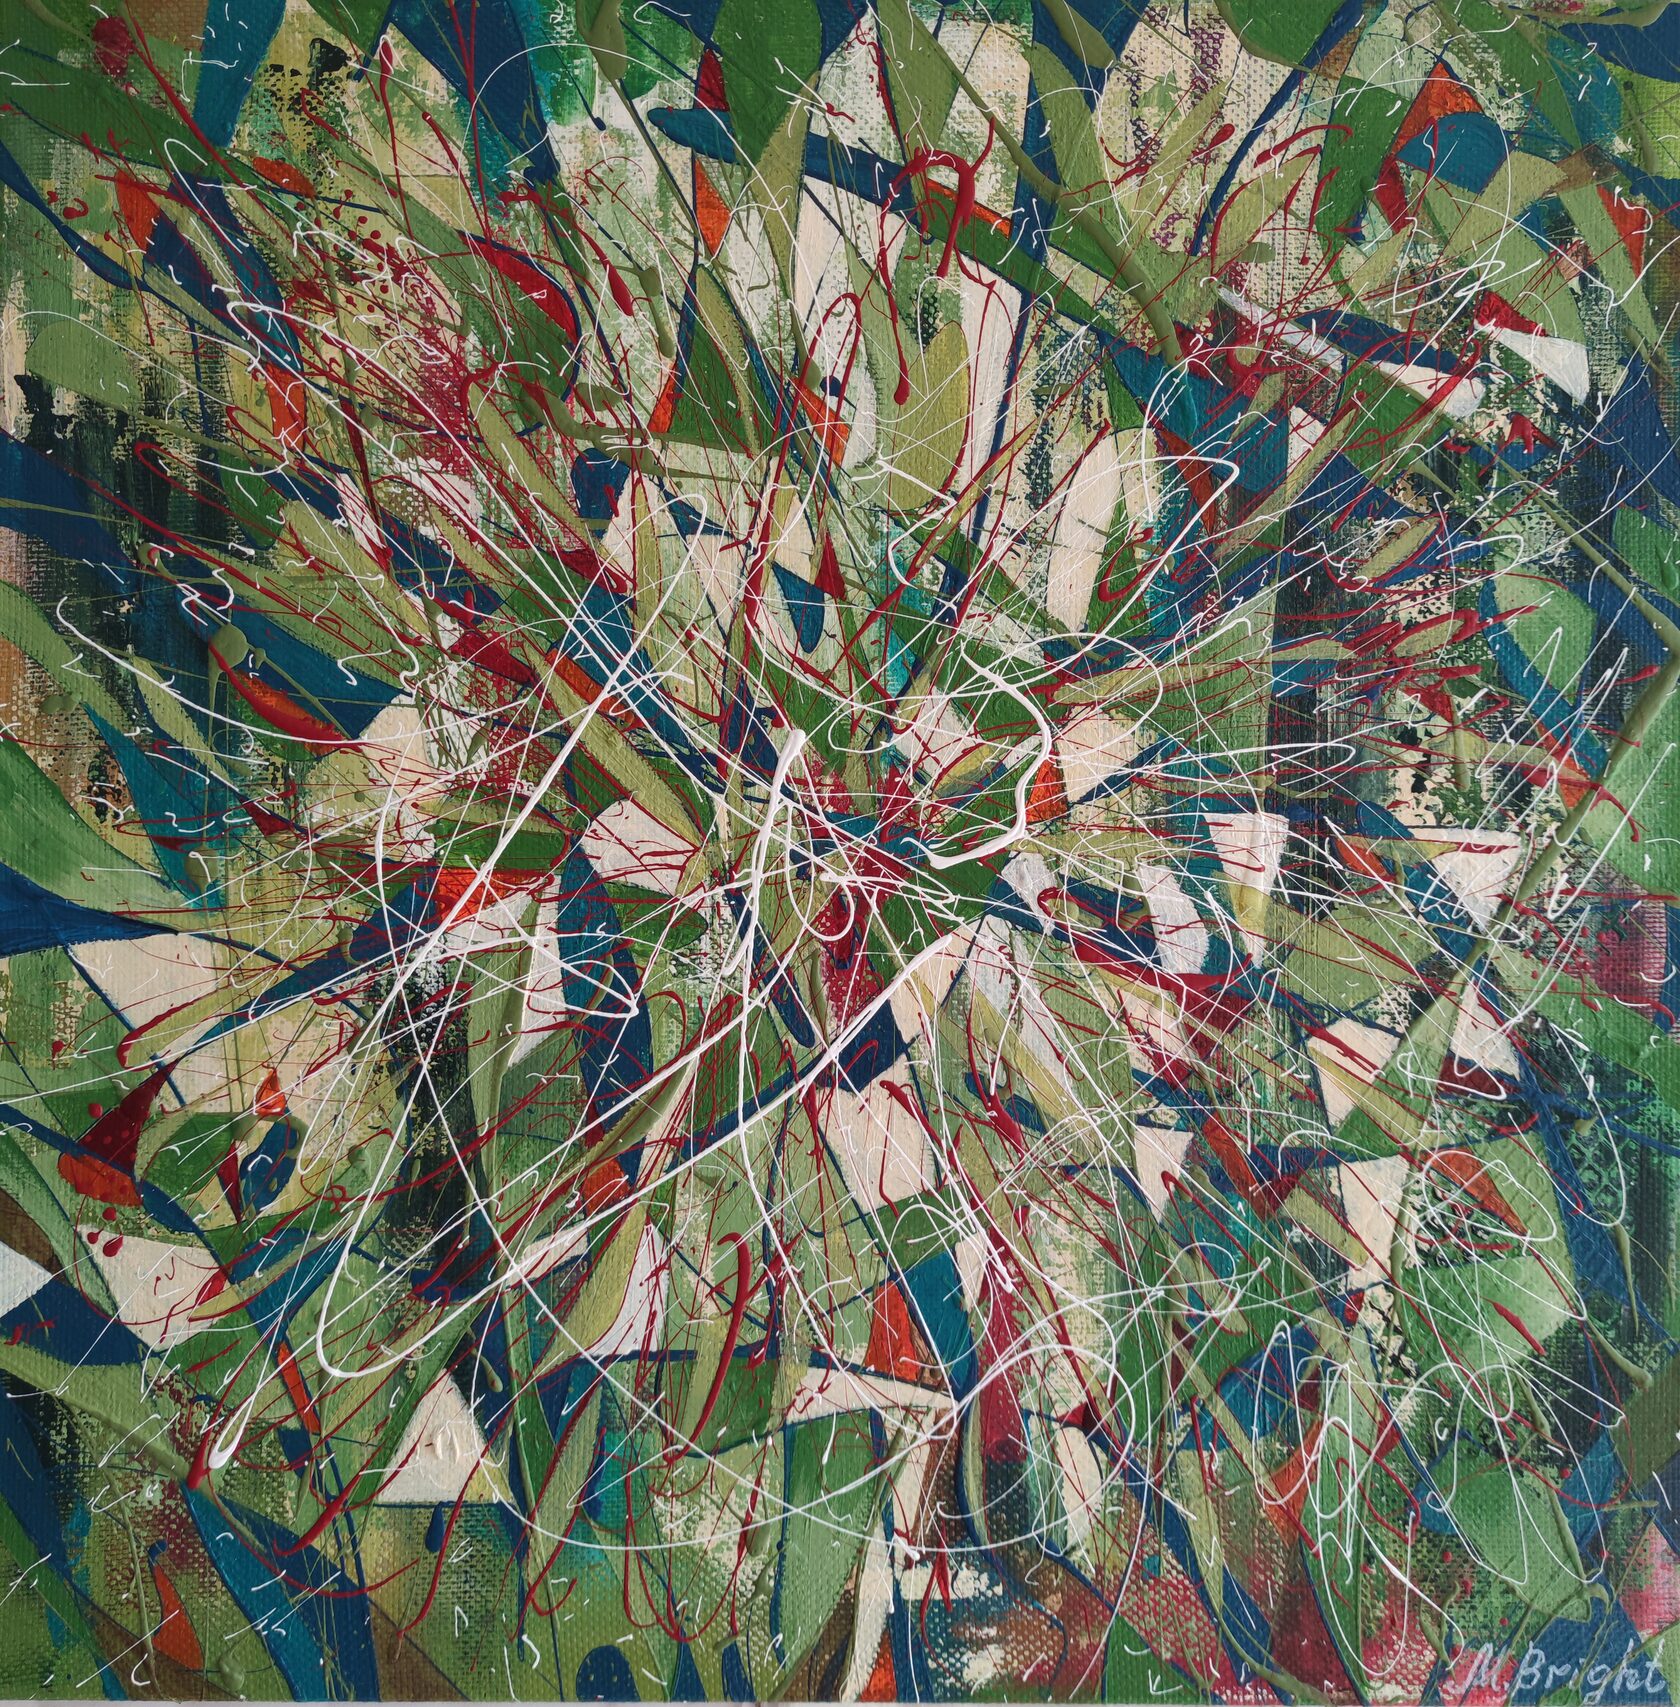 Ярко-зеленая картина на льняном холсте, размер 60*60см, написана в технике абстрактного экспрессионизма известной современной художницей Машей Брайт, данная работа участвовала в двух выставках